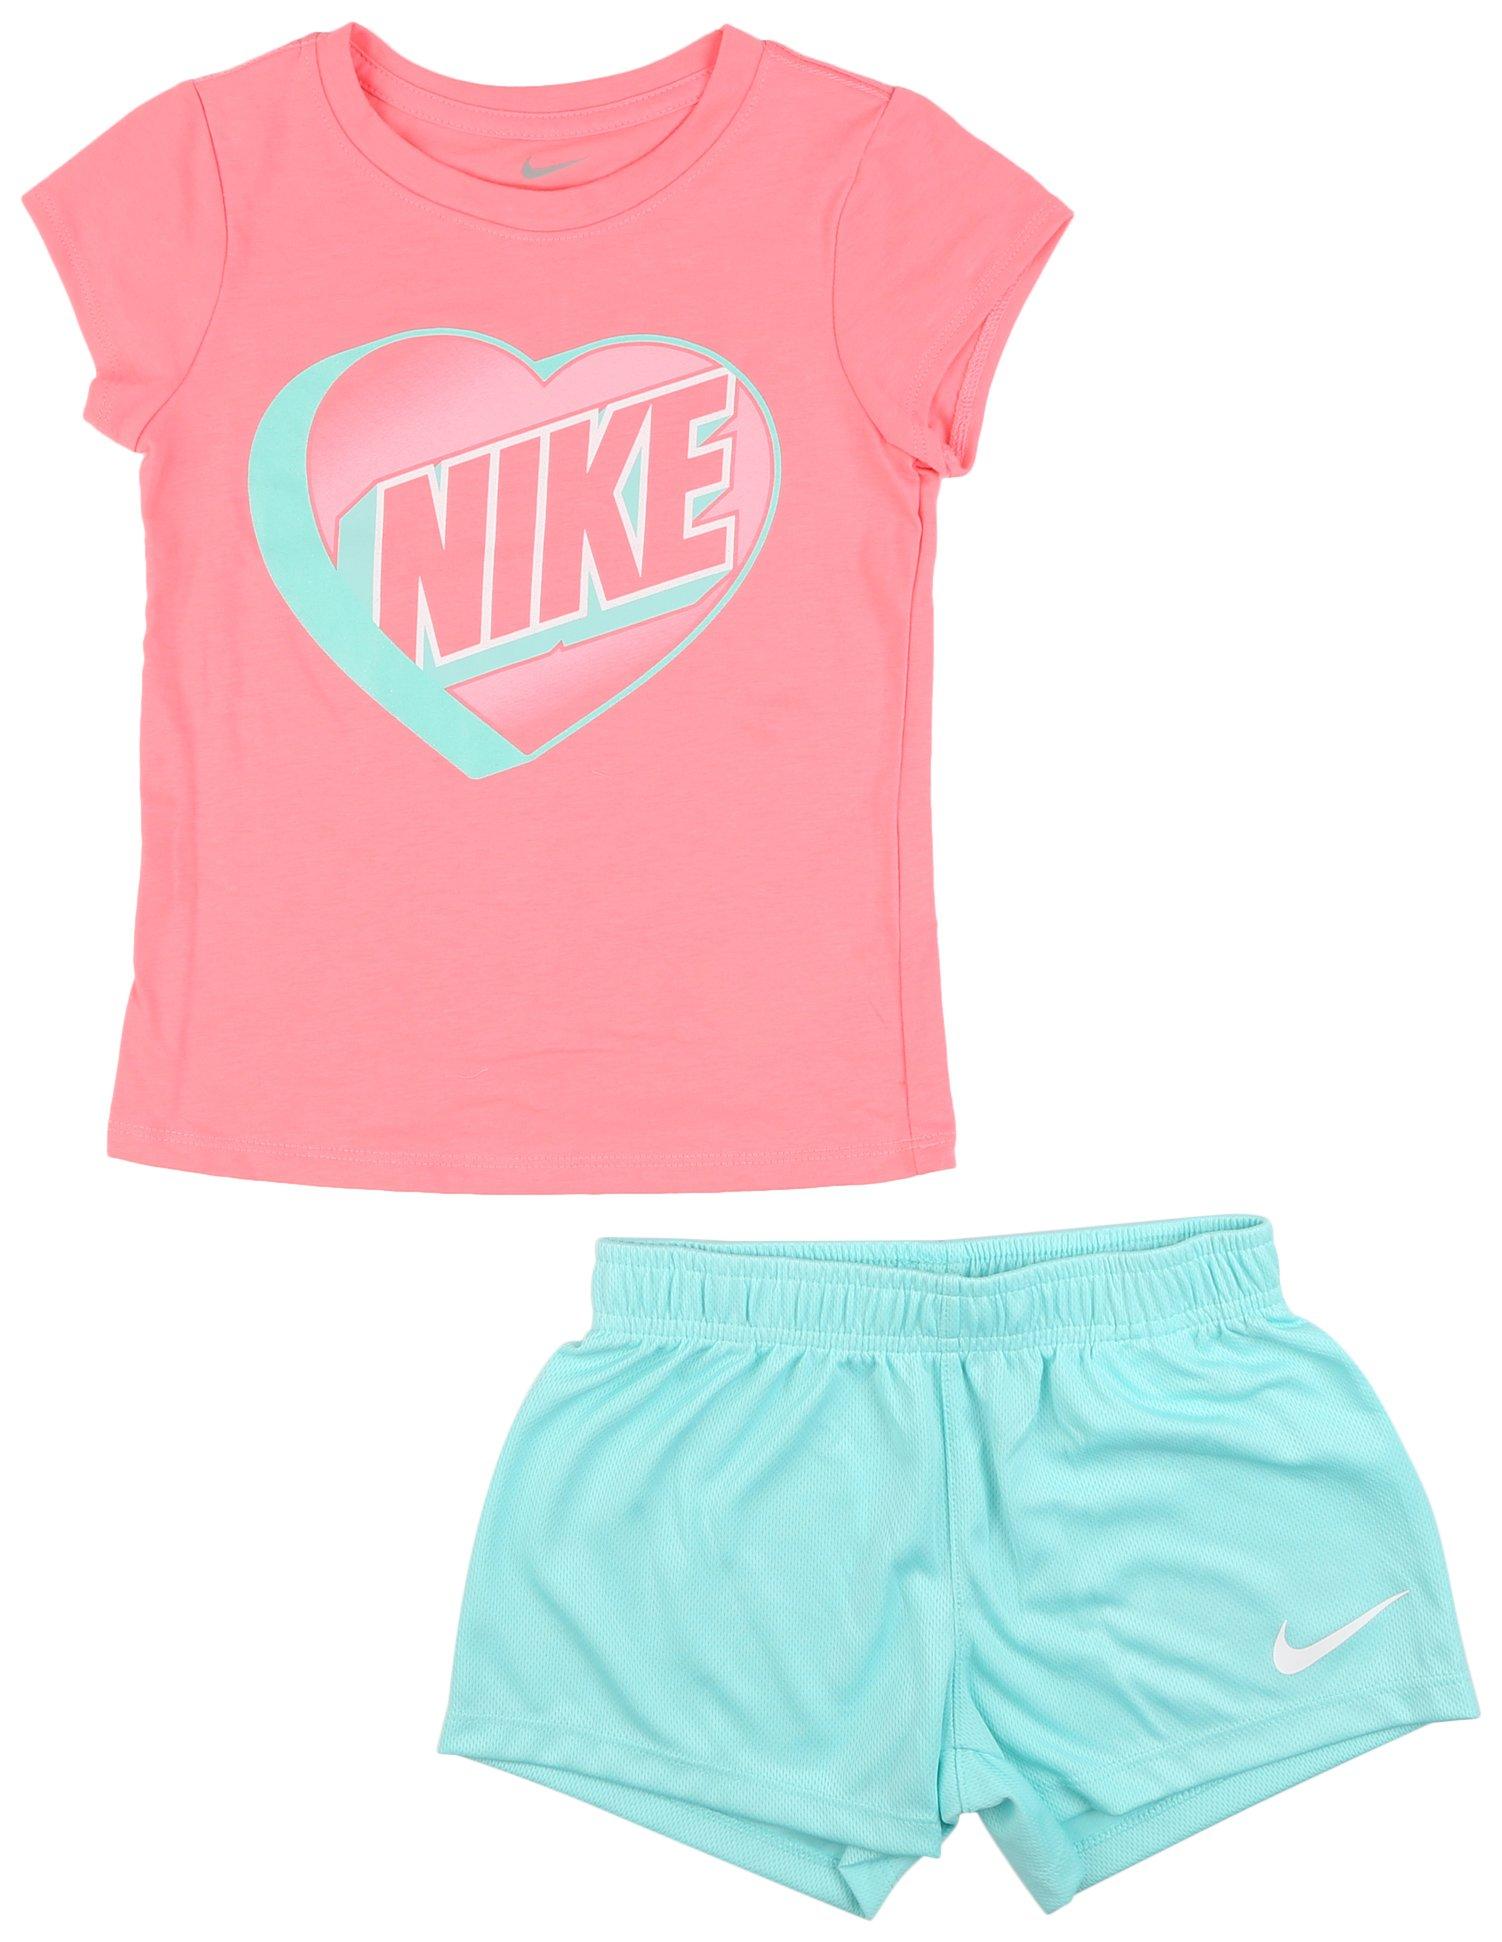 Nike Little Girls 2-pc. Heart Short Sleeve Top Set